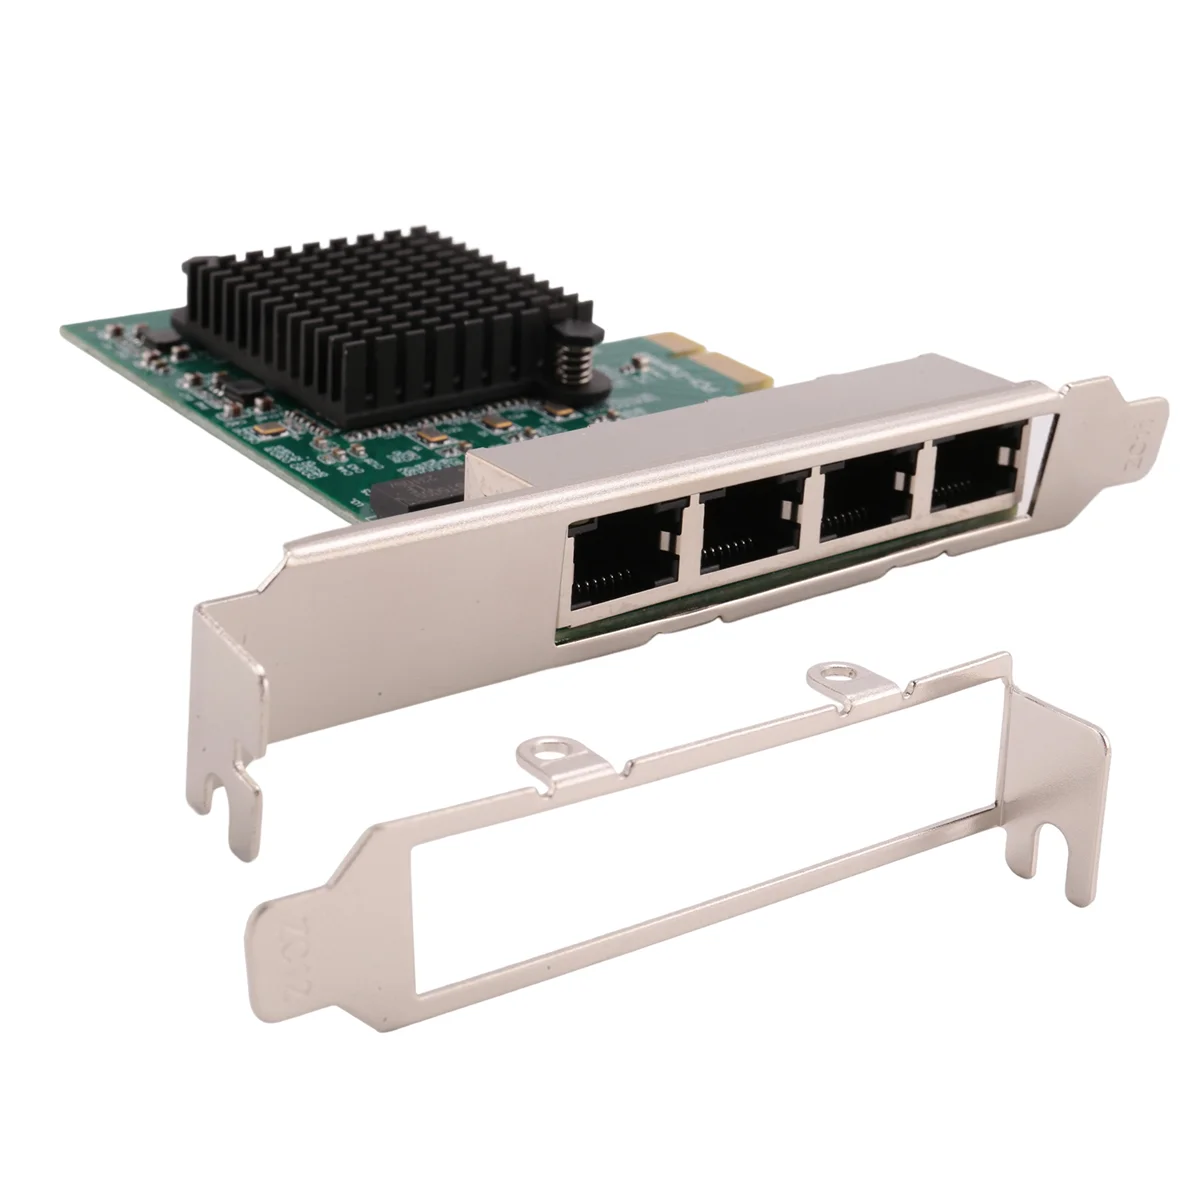 

Сетевые карты Сеть/Ethernet/Lan адаптер PCI-E сетевая карта Realtek RJ45 Интернет Ethernet гигабитная 4-портовая сетевая карта